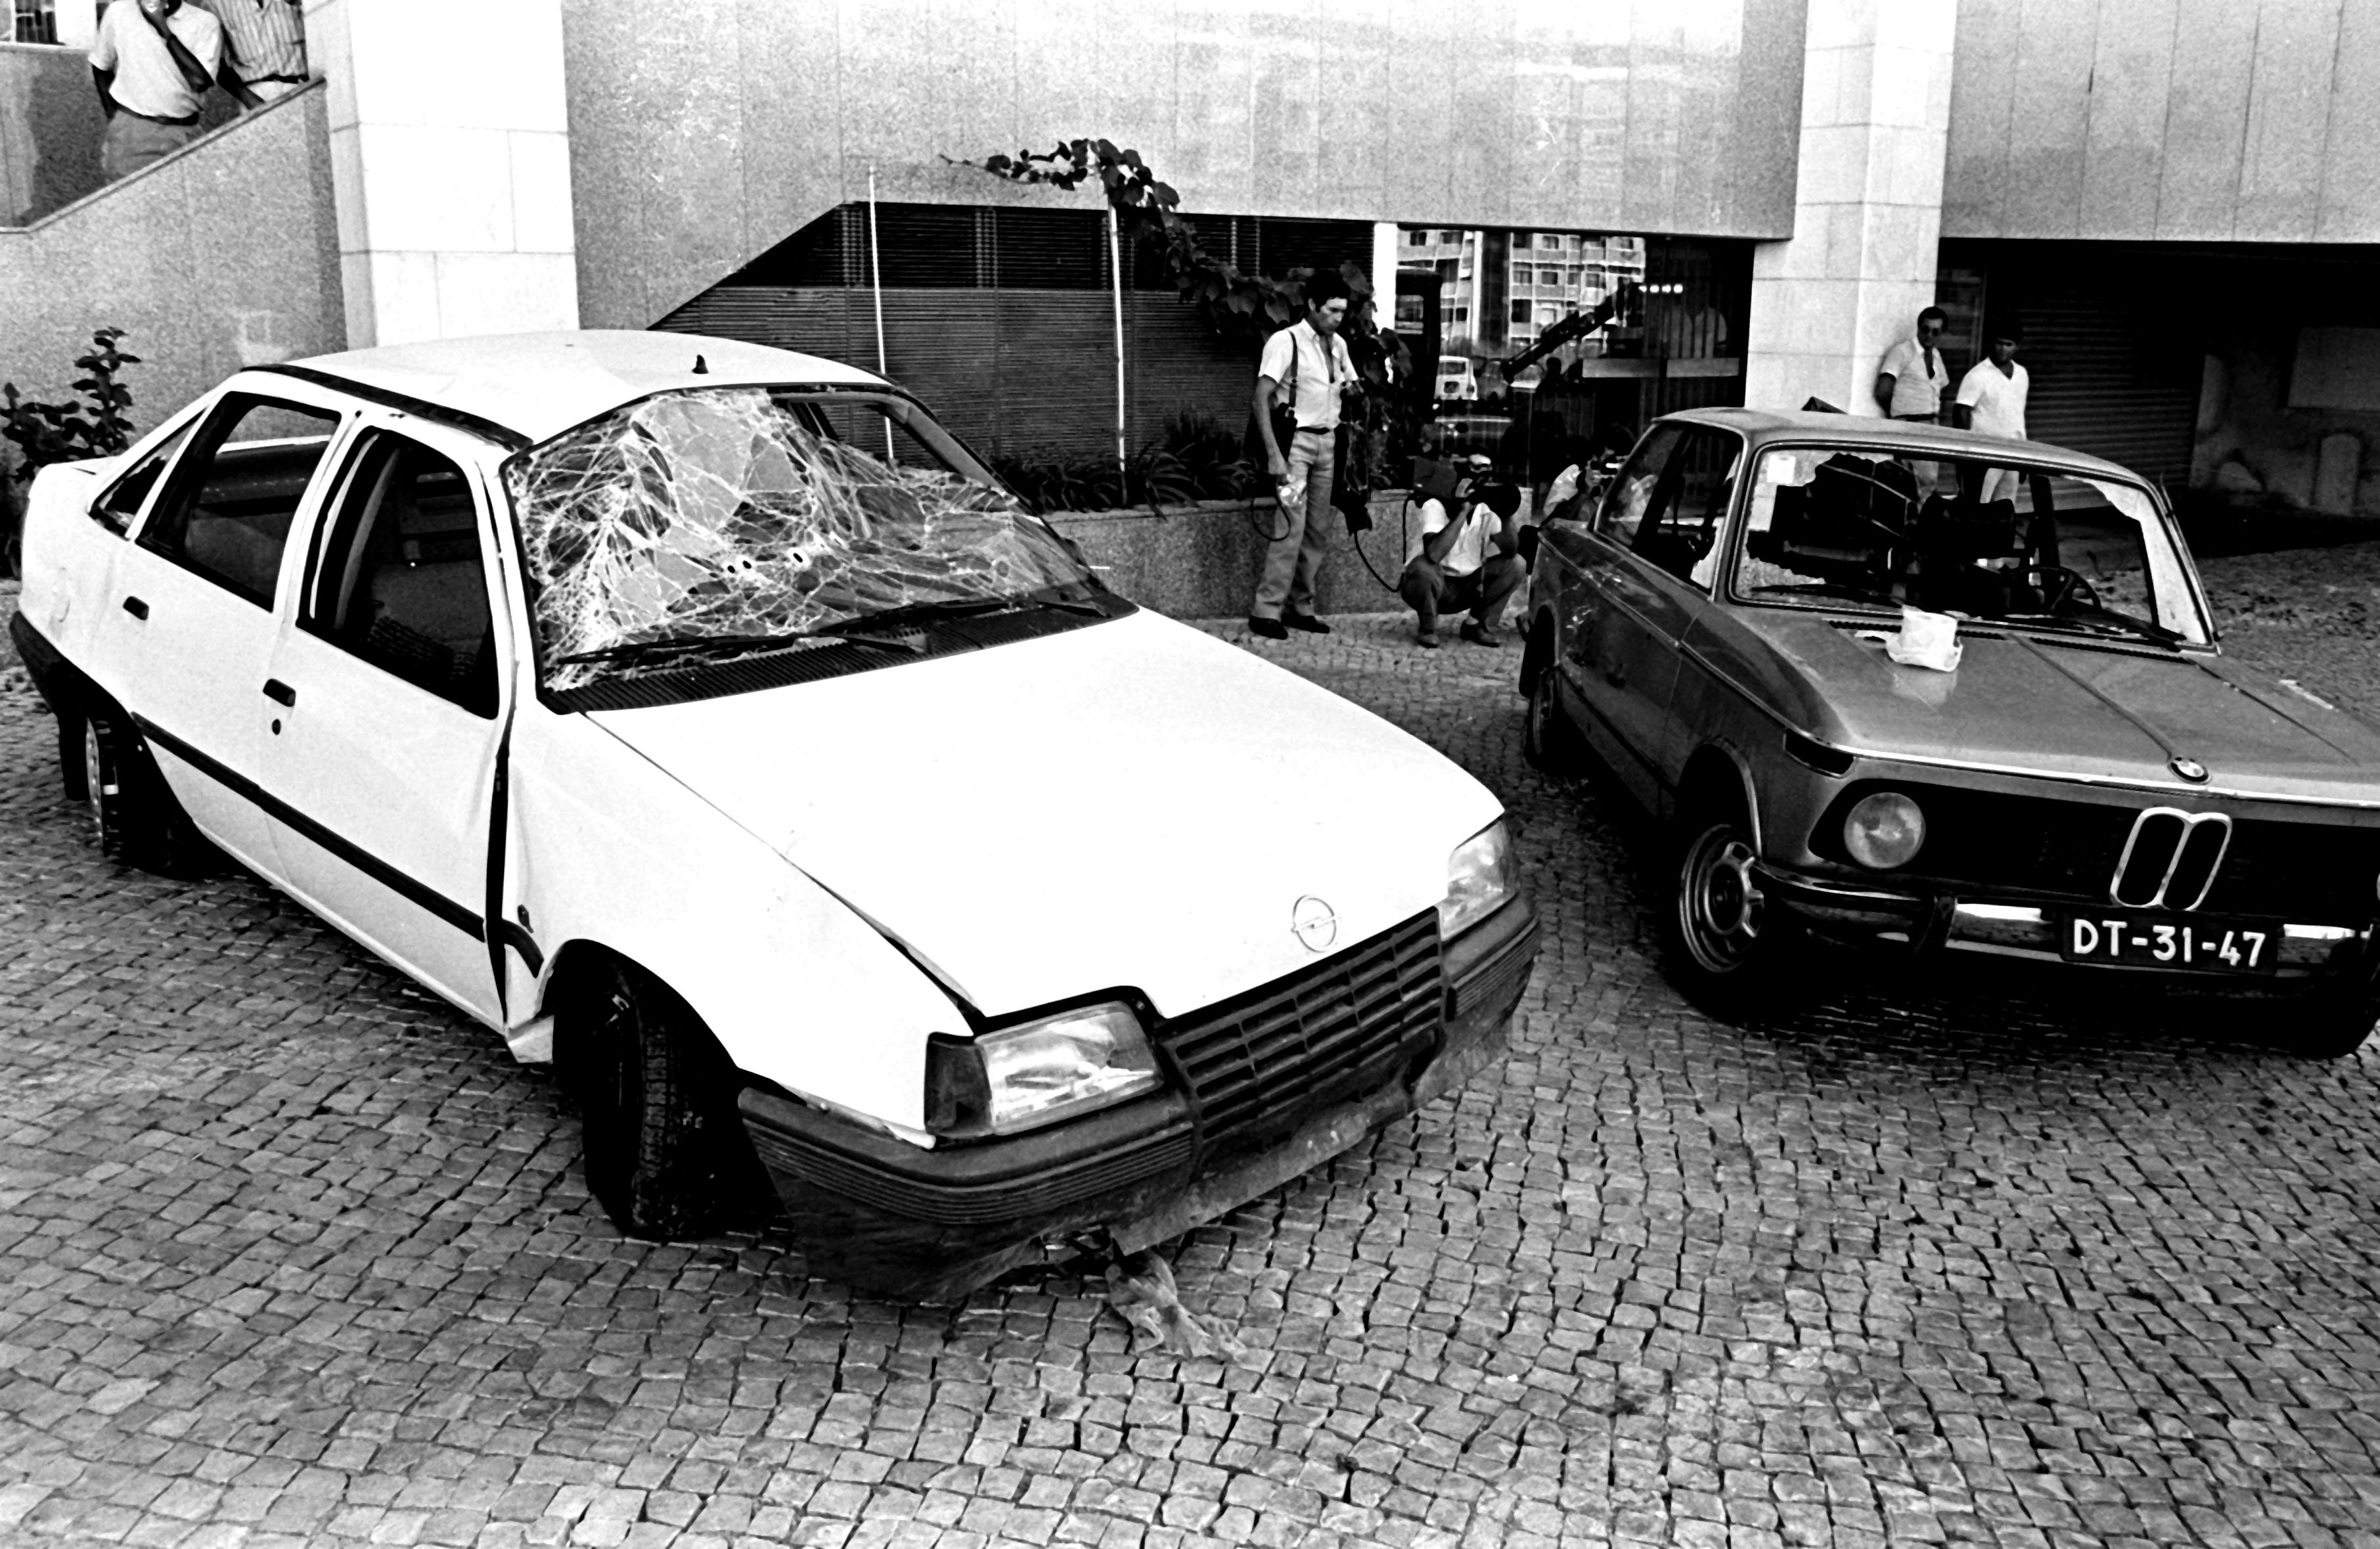 O carro da Polícia Judiciária e o carro dos alegados membros das FP-25, evadidos de uma penitenciária de Lisboa desde 1985 e ontem capturados, depois de um intenso tiroteio onde acabou por morrer um agente da PJ. Lisboa, 18 de agosto de 1987 Guilherme Venâncio / LUsa